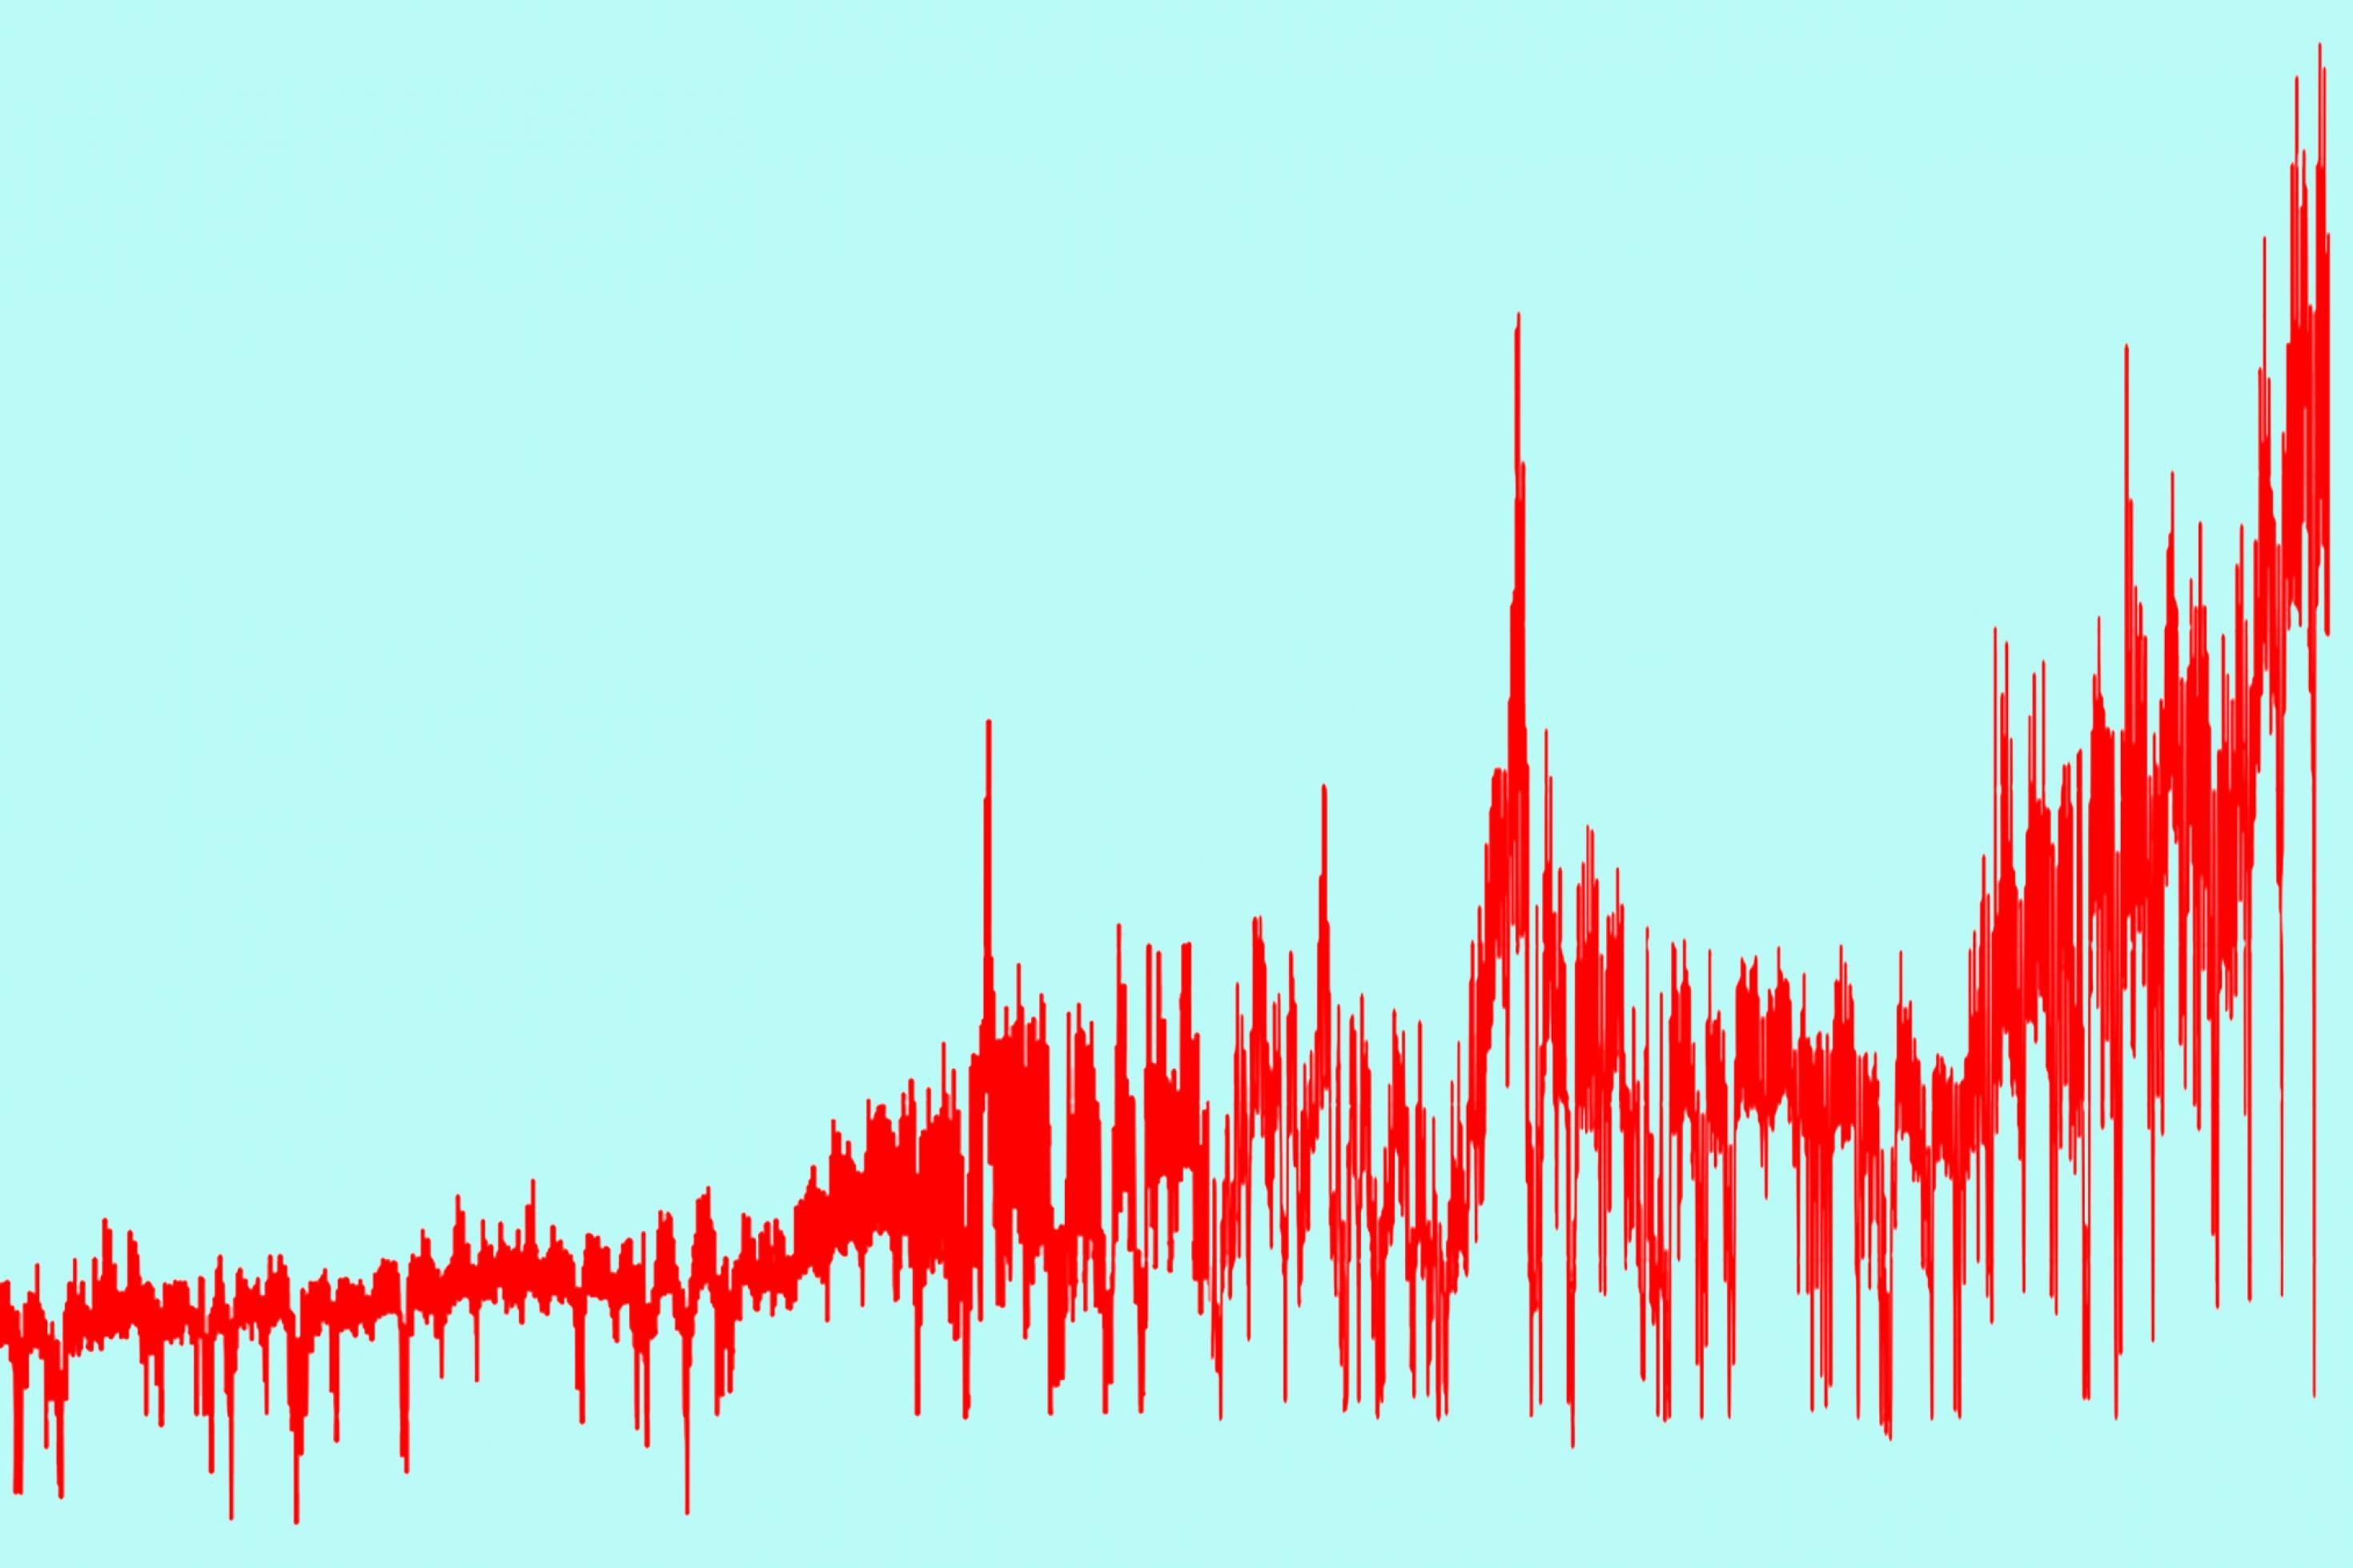 Die Kurve der Strompreise steht als rote Linie auf einem hellblauen Fonds. Einheiten oder Skalen sind nicht angegeben, da es sich um ein illustratives Bild handelt.